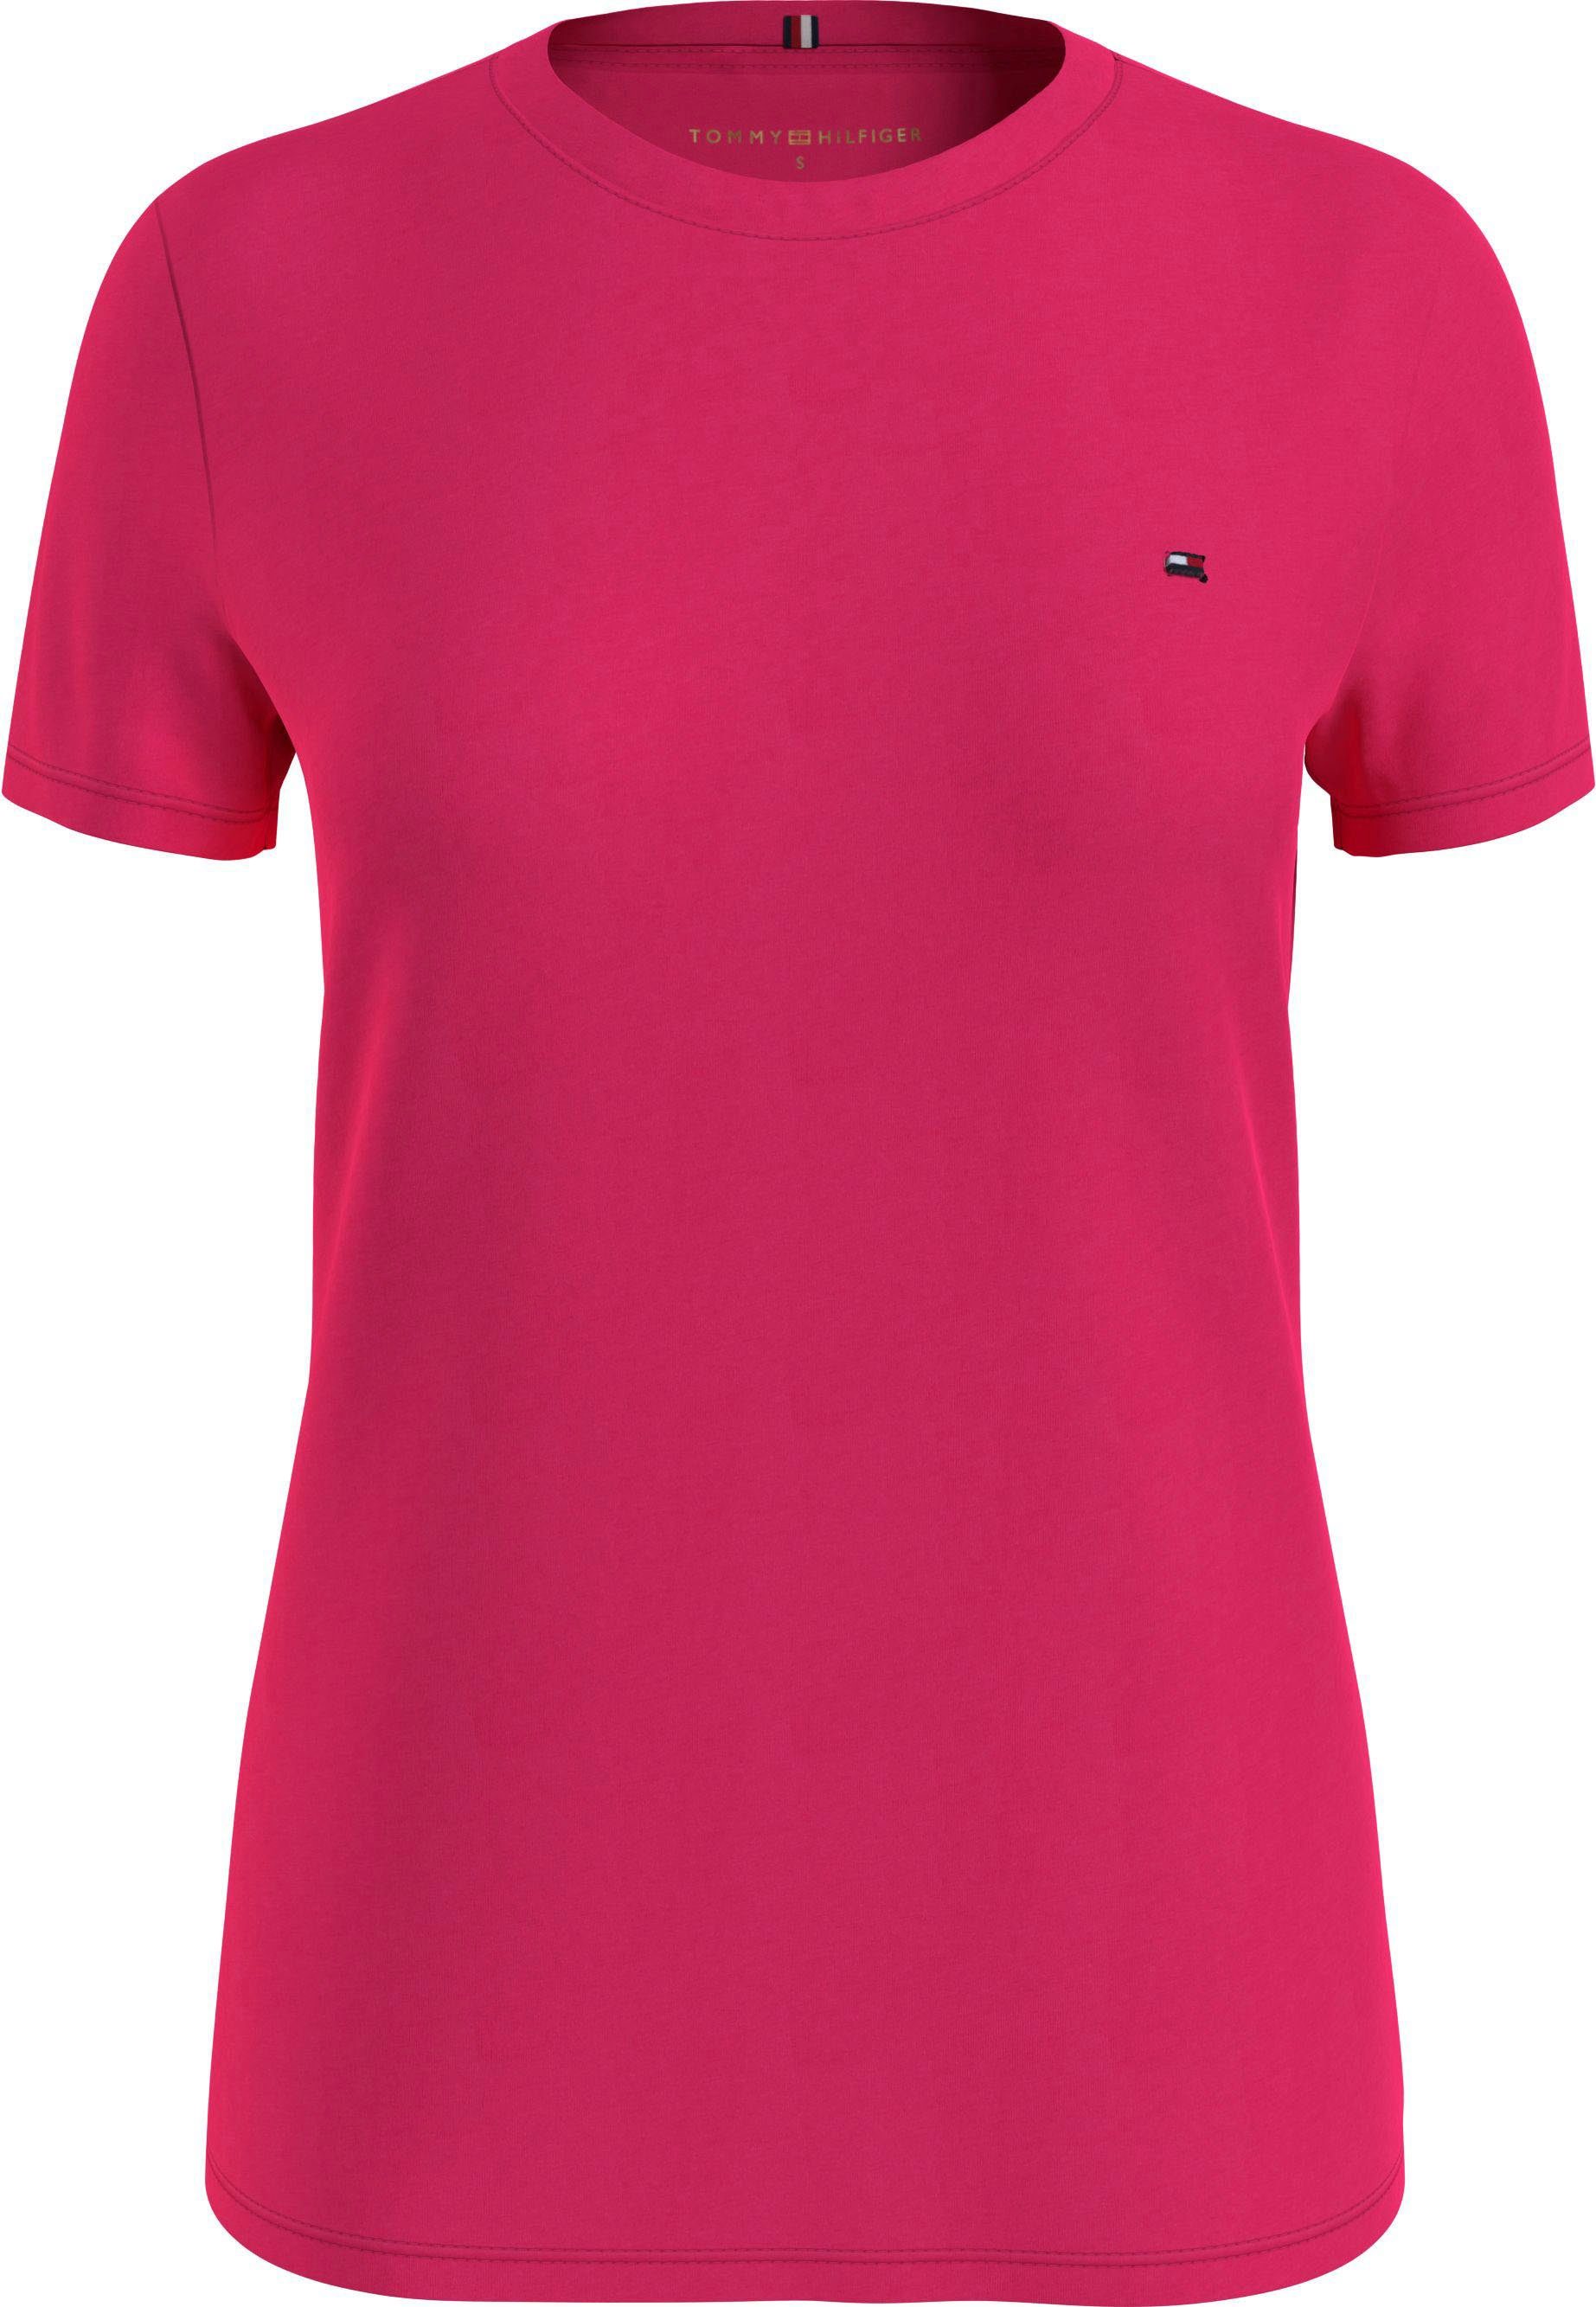 CREW T-Shirt Tommy mit Hilfiger Tommy Pink-Splendor NECK Hilfiger TEE NEW Markenlabel